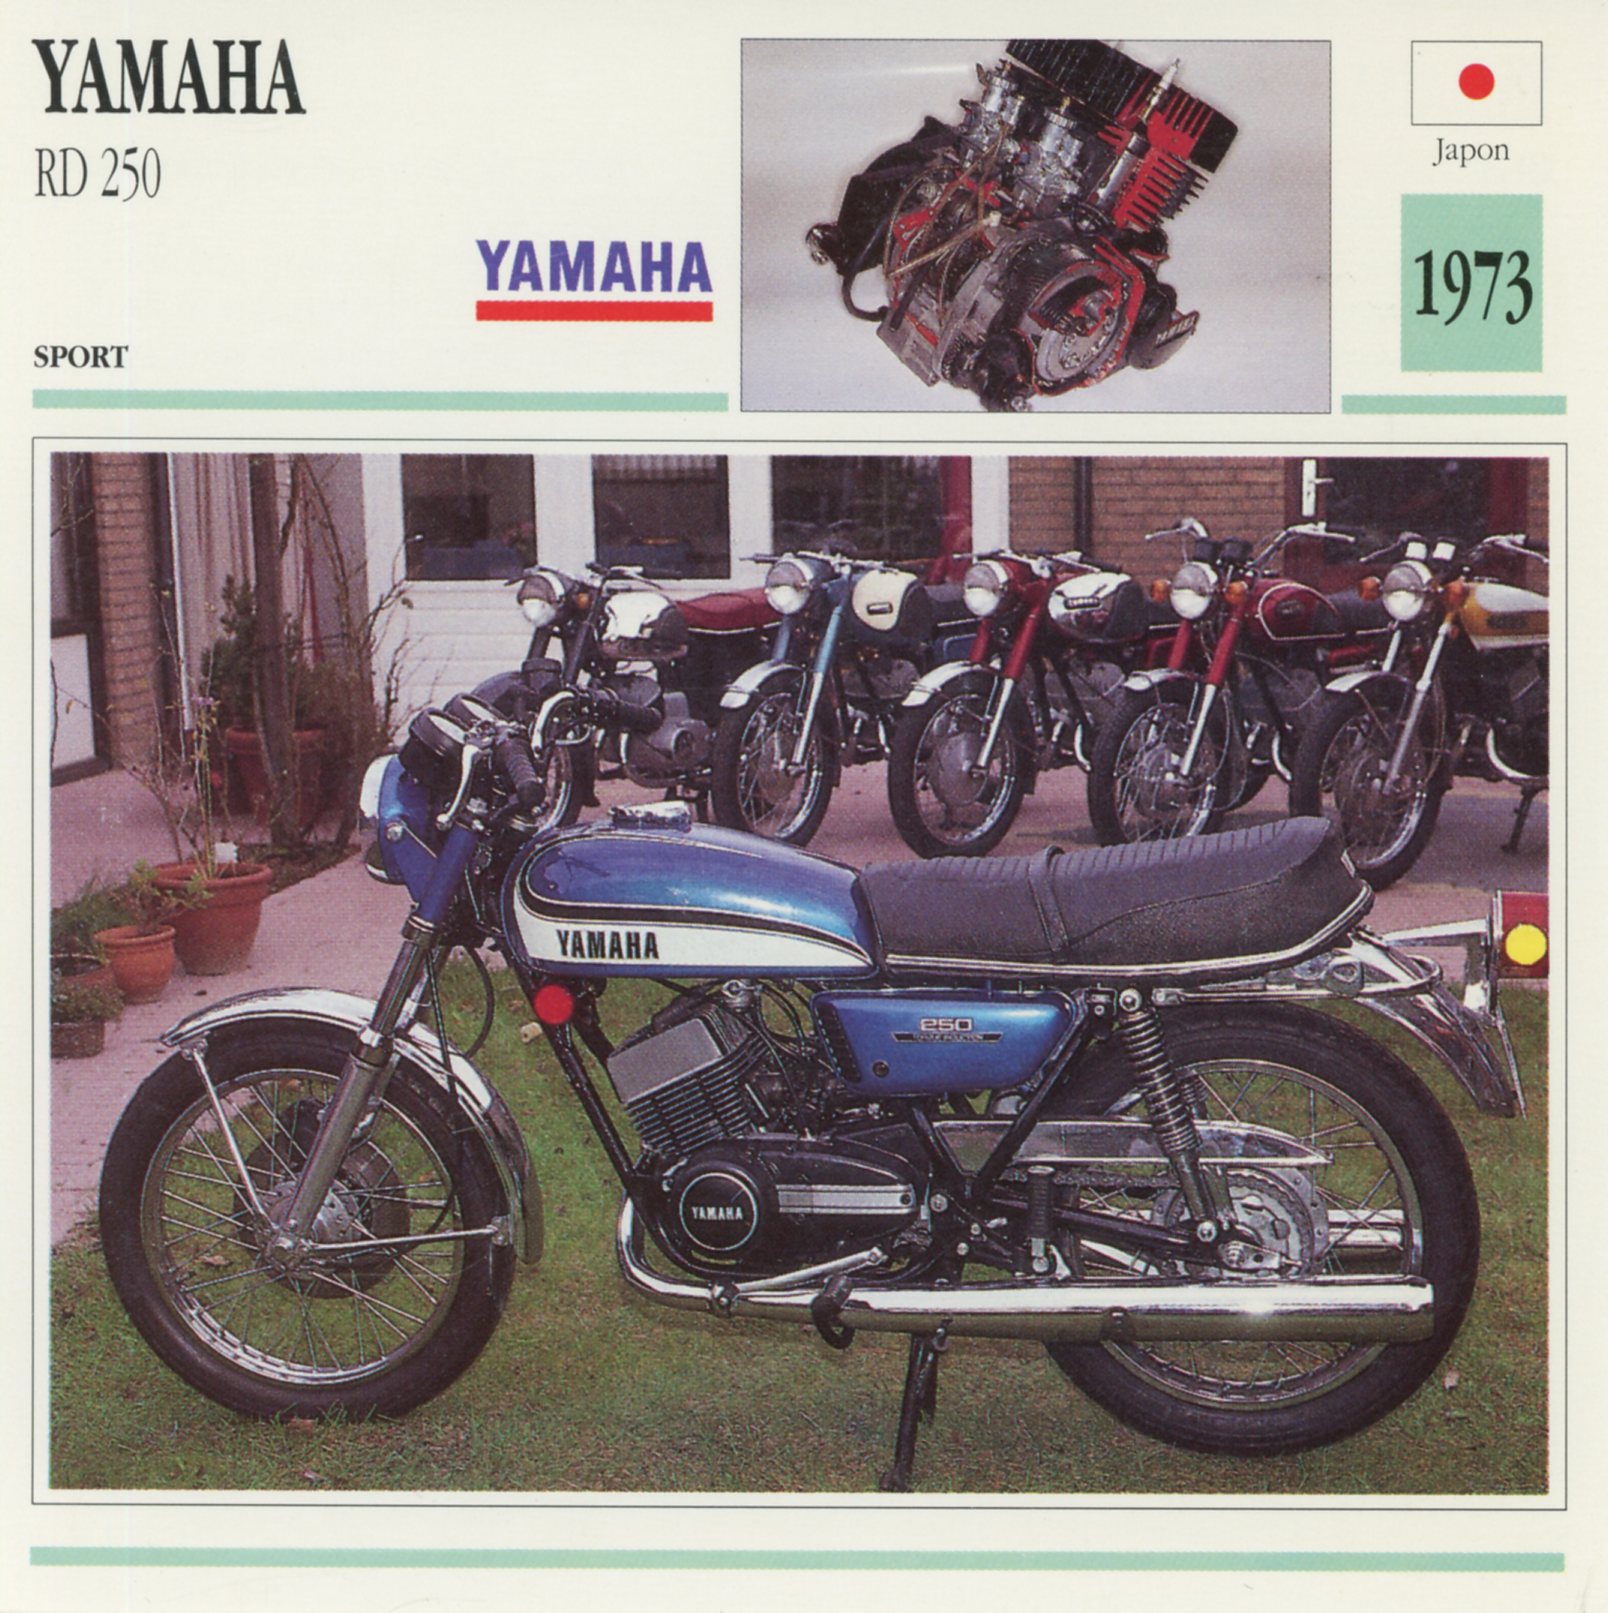 FICHE-MOTO-YAMAHA-RD-RD250-1973-LEMASTERBROCKERS-littérature-brochure